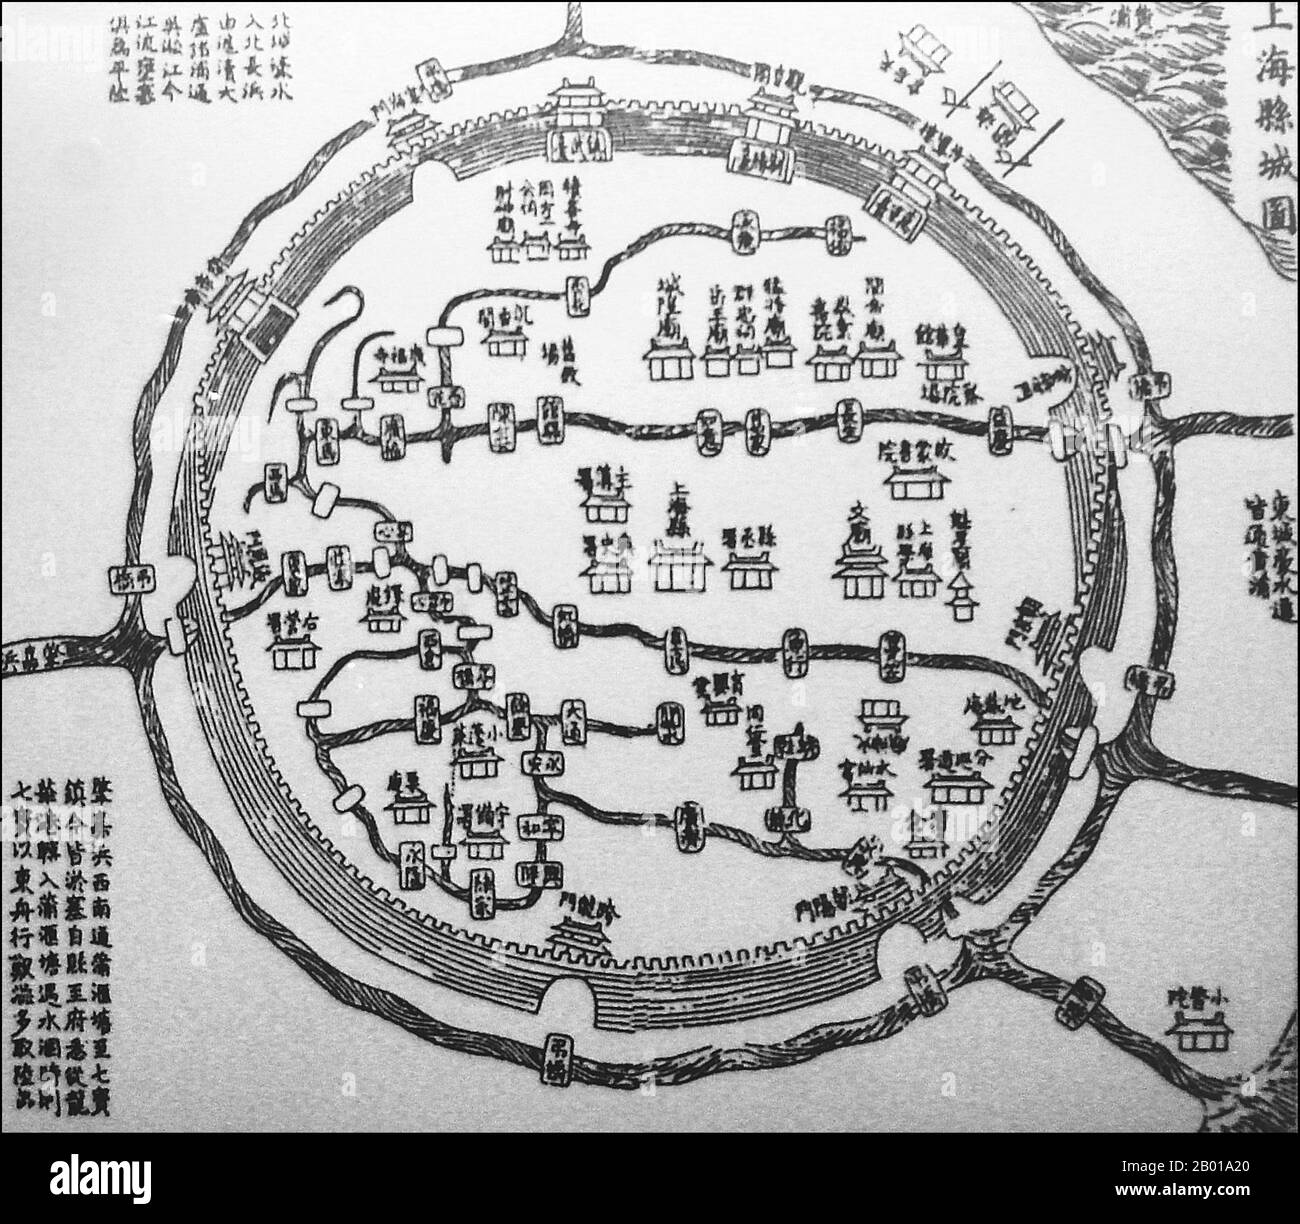 China: Eine chinesische Karte der Altstadt von Shanghai, 1553. Die Altstadt von Shanghai (Shànghăi Gùchéng) bezieht sich auf die älteste Gegend Shanghais, die oft einfach als Nanshi, "Südstadt", bezeichnet wird, da sie südlich der alten internationalen Siedlungen lag. Sie ist kreisförmig und wurde früher von einer Verteidigungsmauer umgeben. Zu den bemerkenswerten Merkmalen gehört der Stadtgotttempel, der sich im Zentrum der Altstadt befindet und mit dem Yuyuan-Garten verbunden ist. Heute wurden die meisten Mauern durch breite kreisförmige Alleen ersetzt, die Renmin Lu im Norden und Zhonghua Lu im Süden. Stockfoto